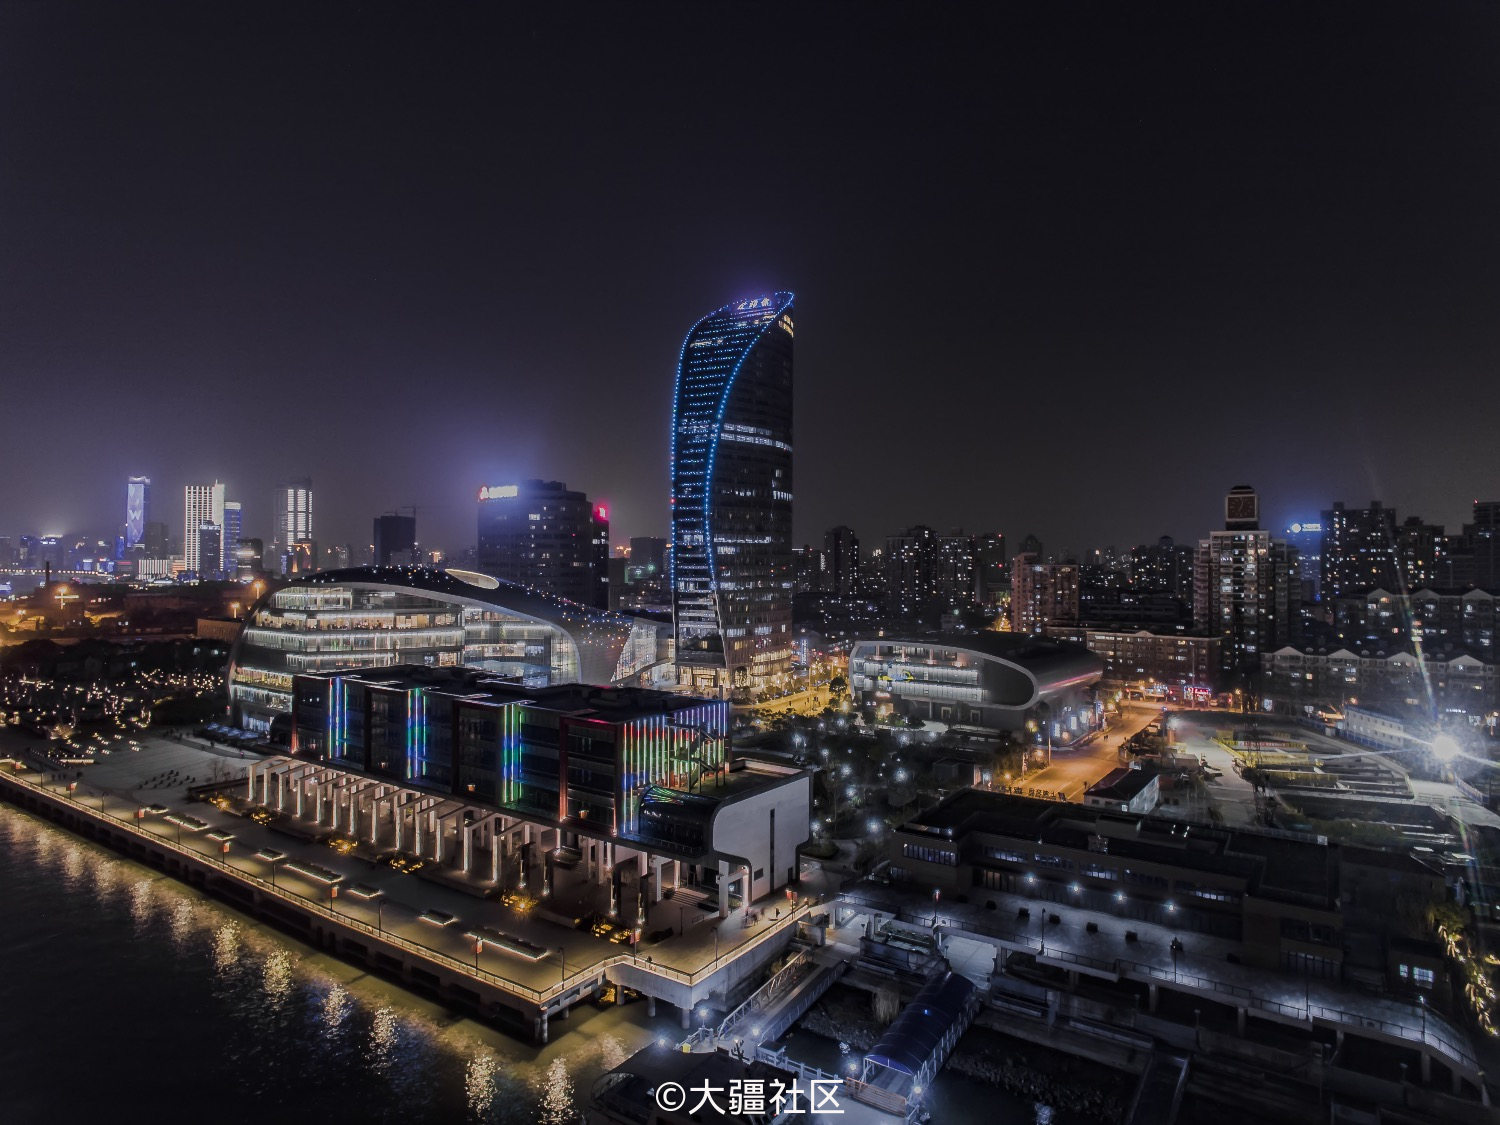 上海渔人码头夜景图片